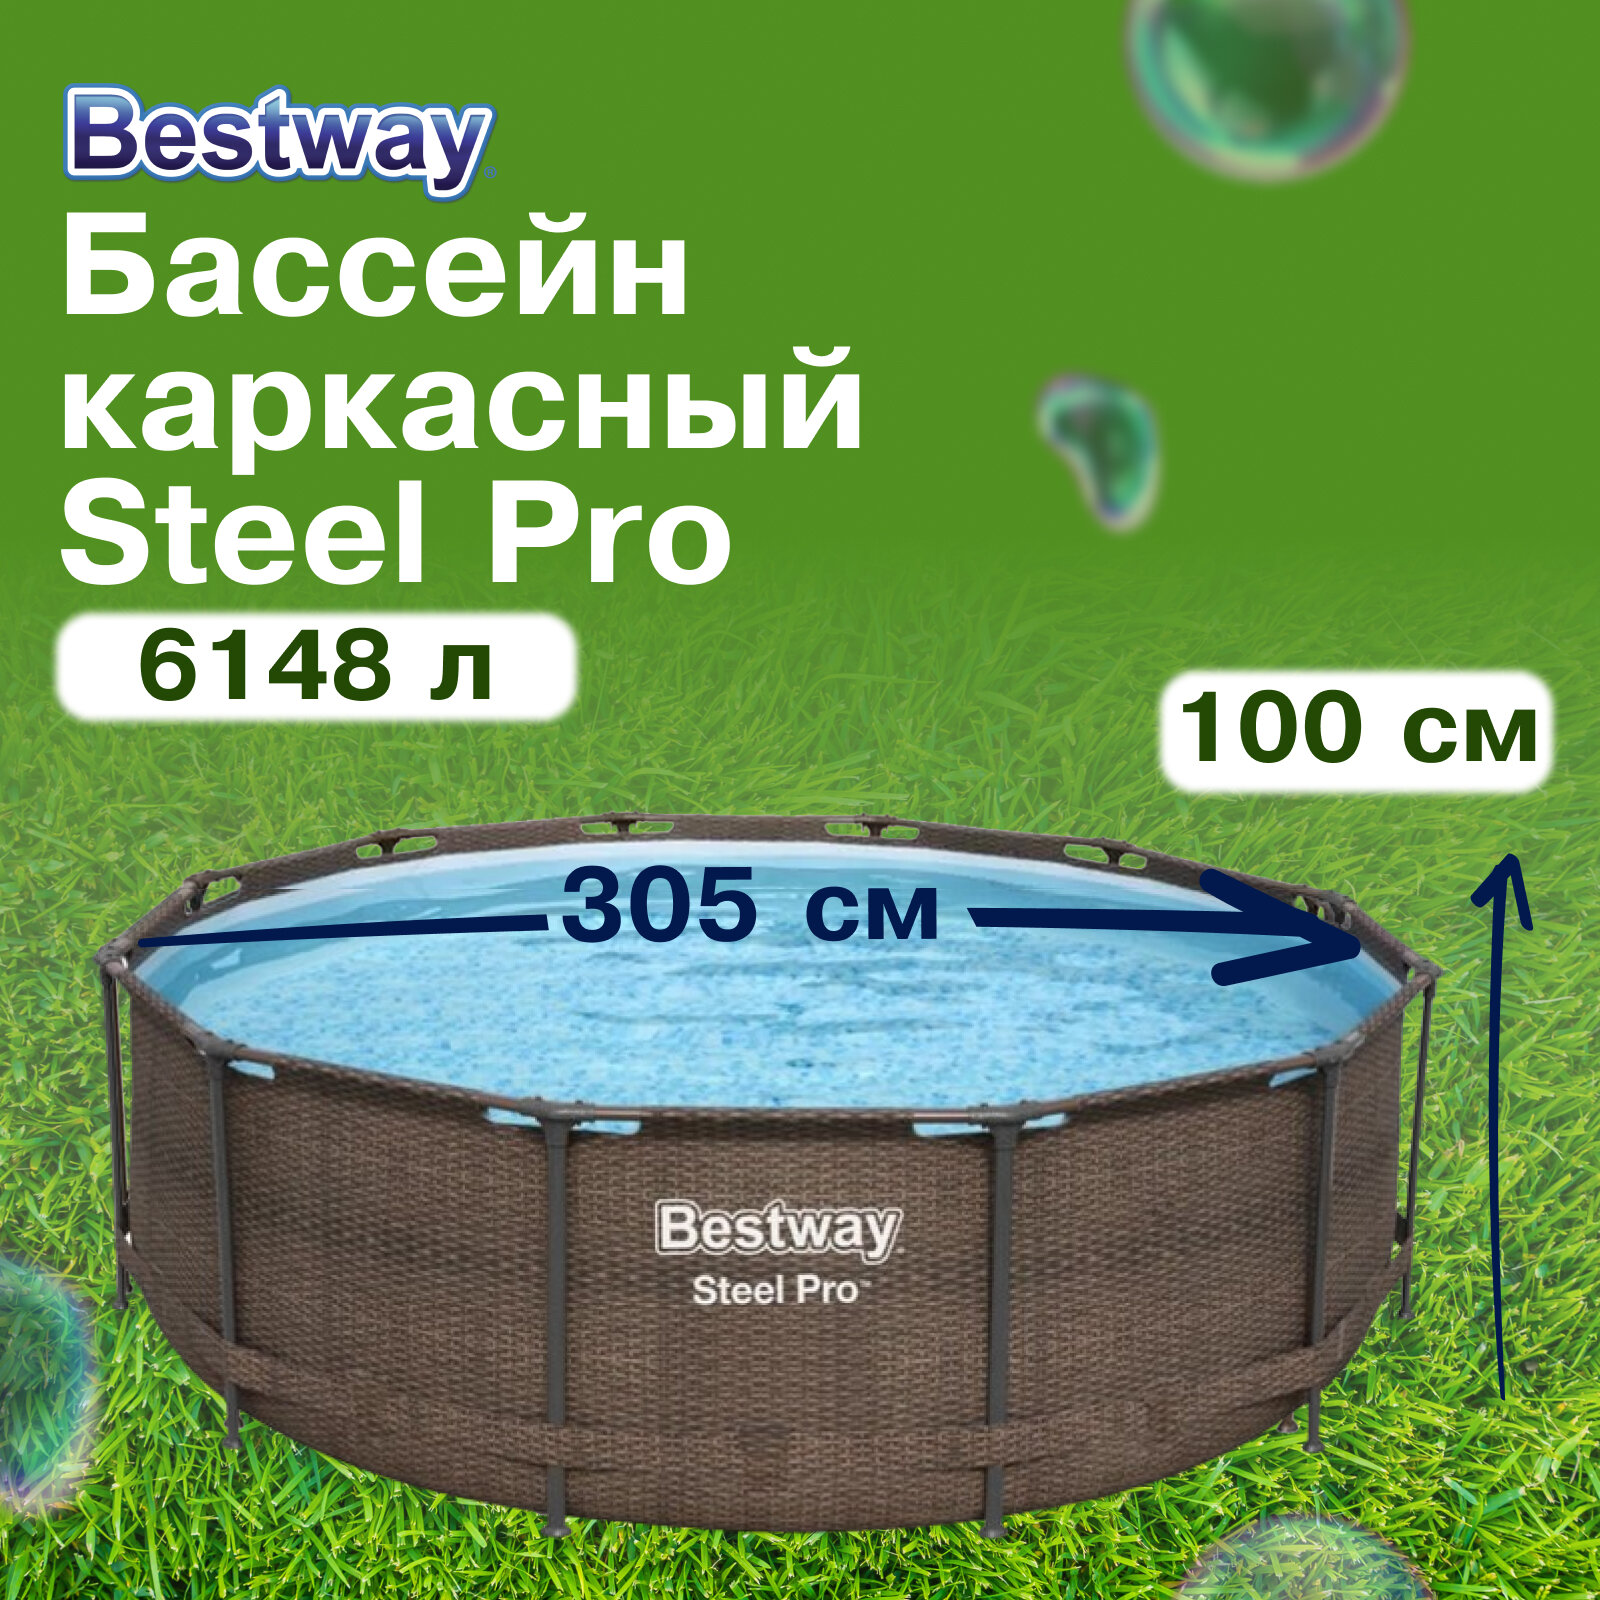 Бассейн Bestway "Steel Pro", каркасный, круглый, диаметр 305 см, высота 100 см, объем 6148 л, 5617P — купить в интернет-магазине по низкой цене на Яндекс Маркете